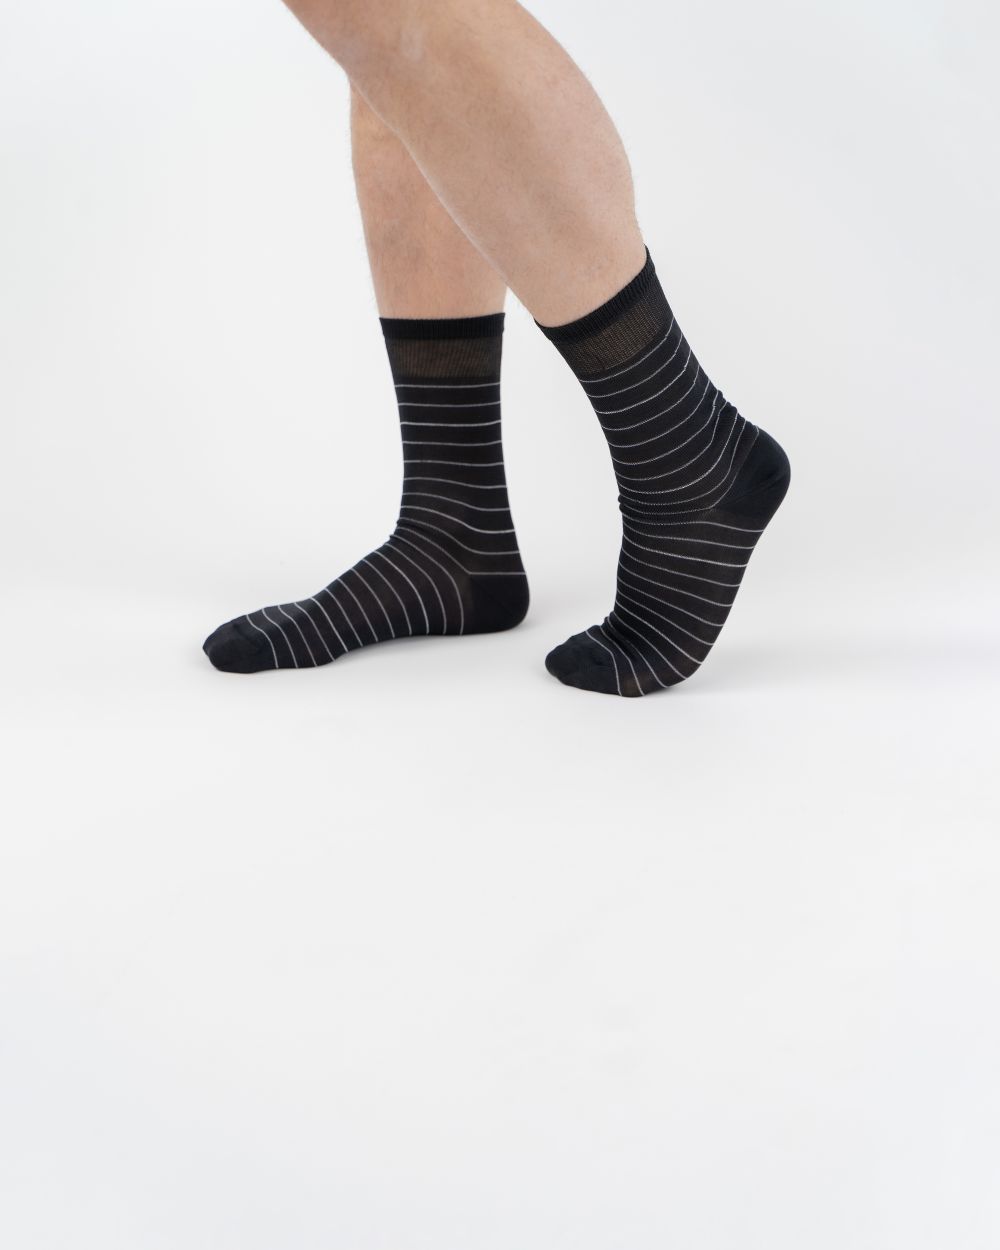 Navigare Intimo muške čarape tamno sive boje